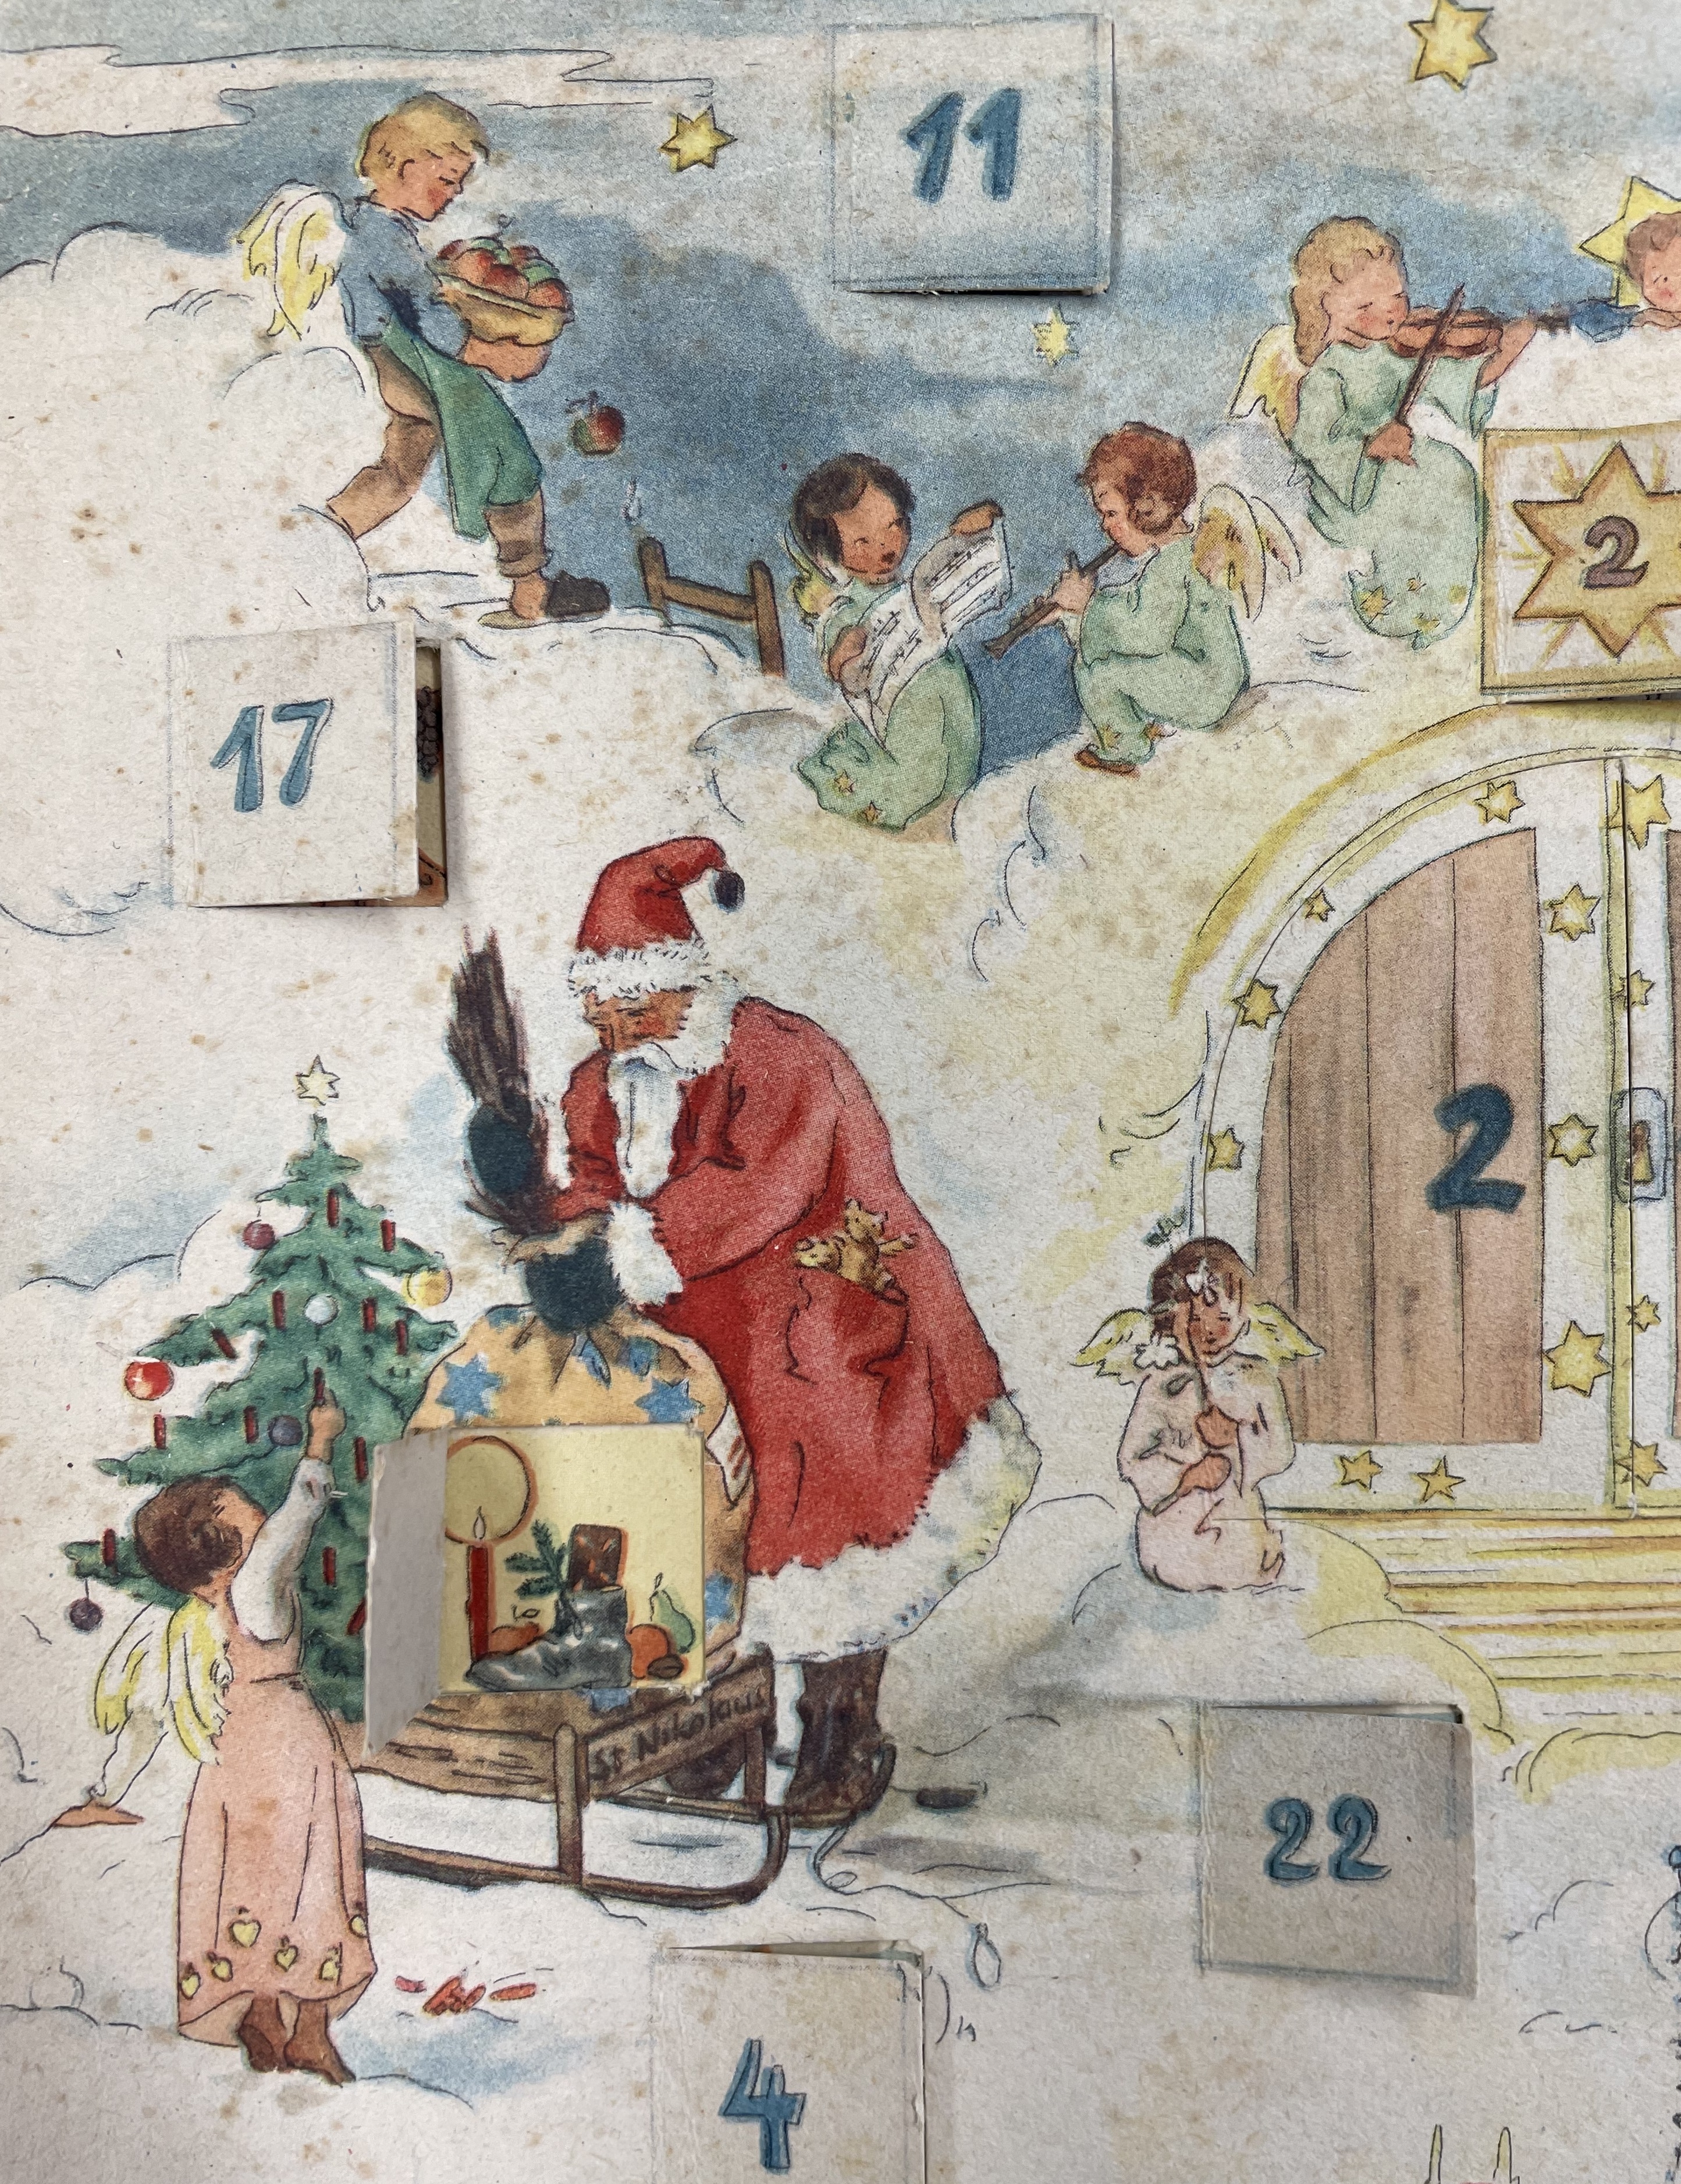 Ein himmlischer Kalender. Adventskalender von 1947 im Archiv für